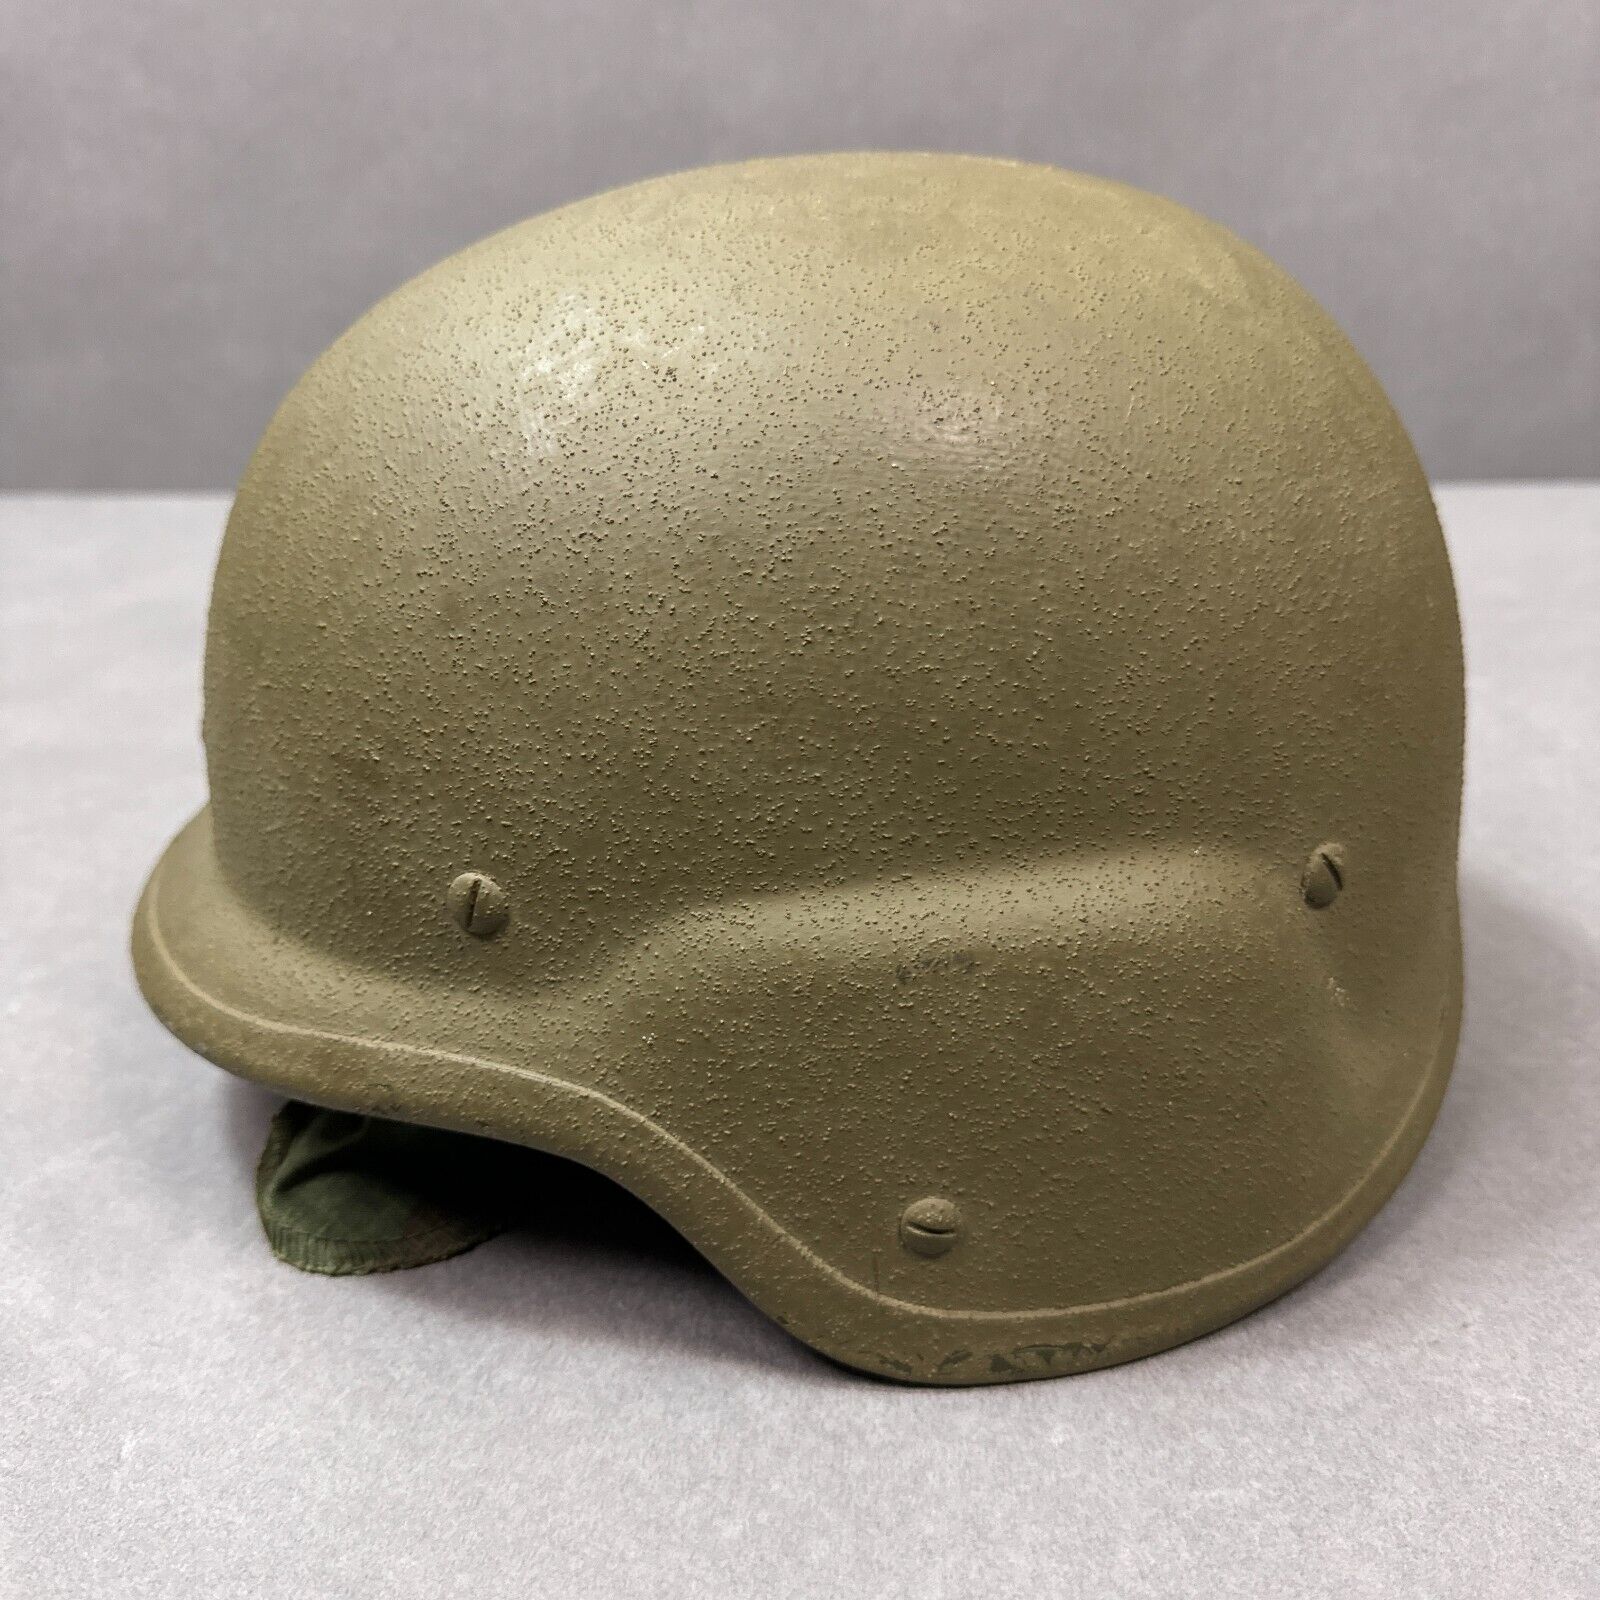 US Military Helmet Mens Medium Green PASGT Ballistic Cover Surplus Combat 1989